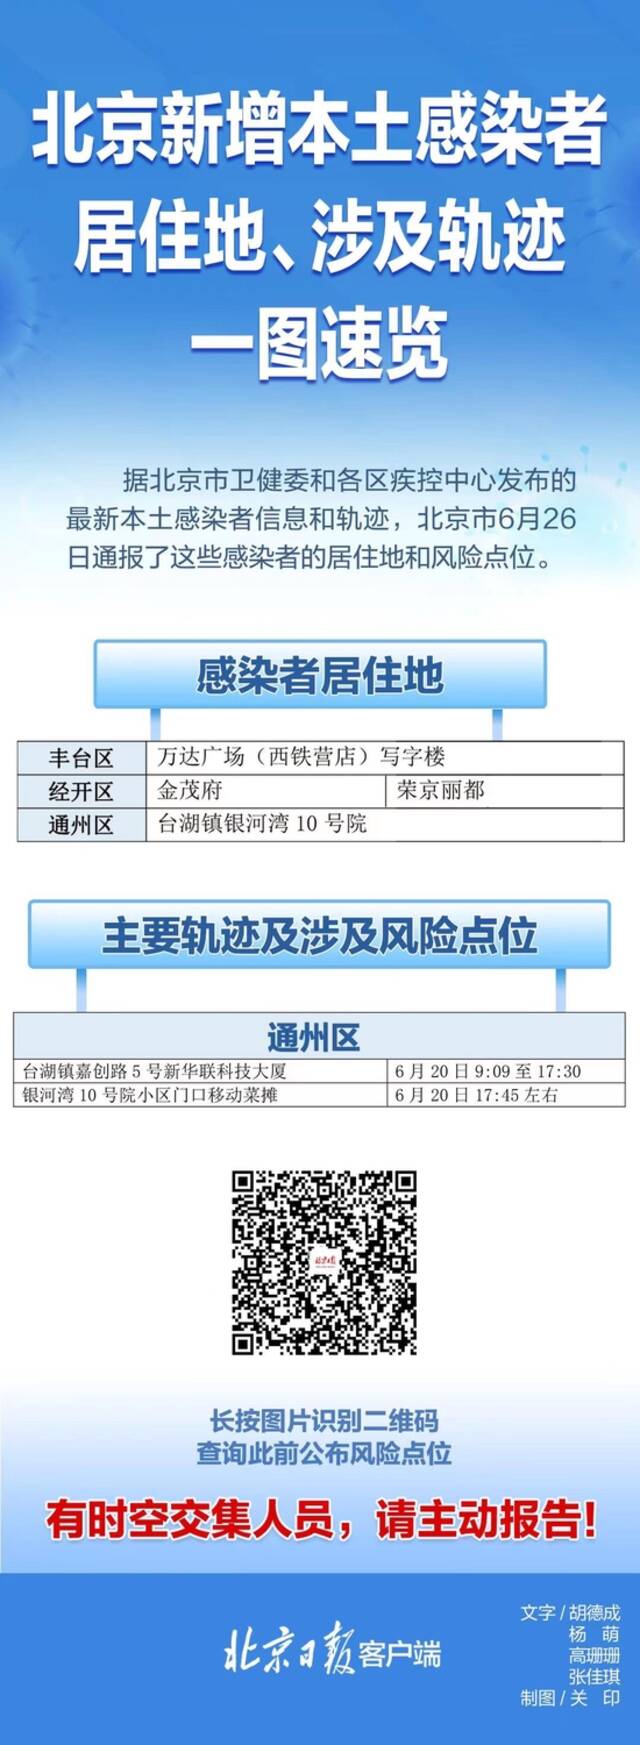 速自查！北京26日通报感染者居住地、工作地、风险点一图速览